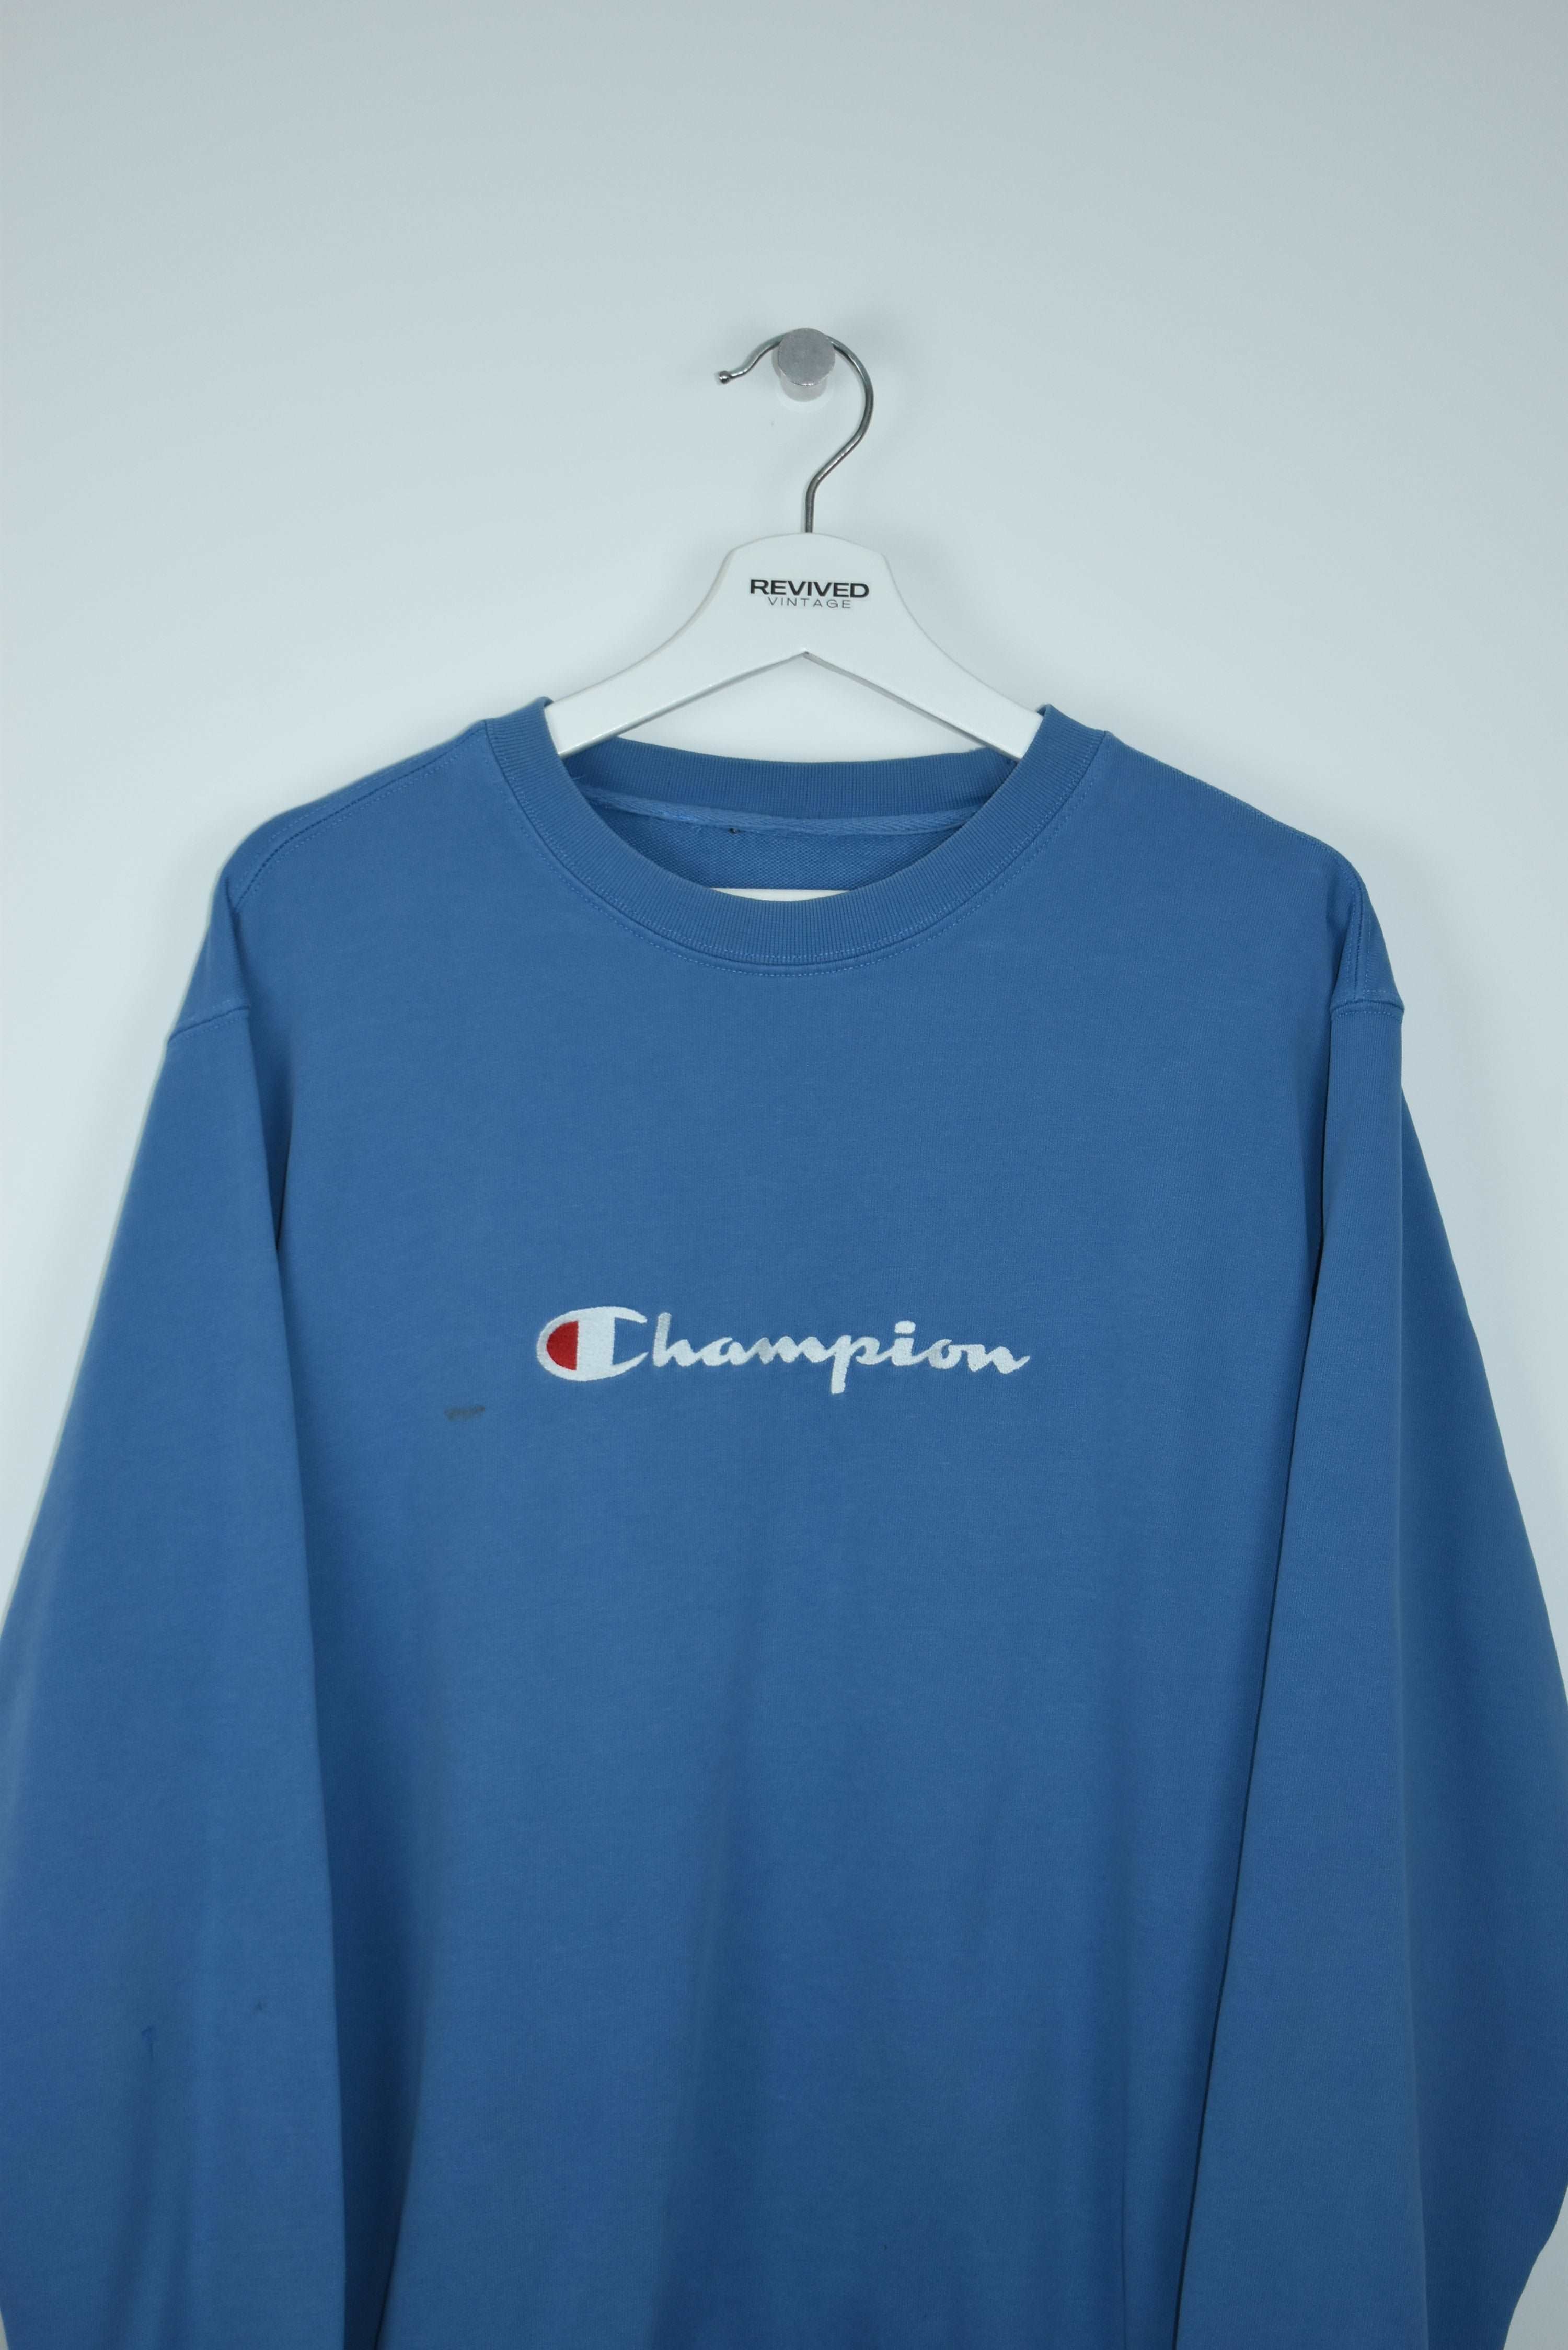 Vintage Champion Embroidered Sweatshirt Large